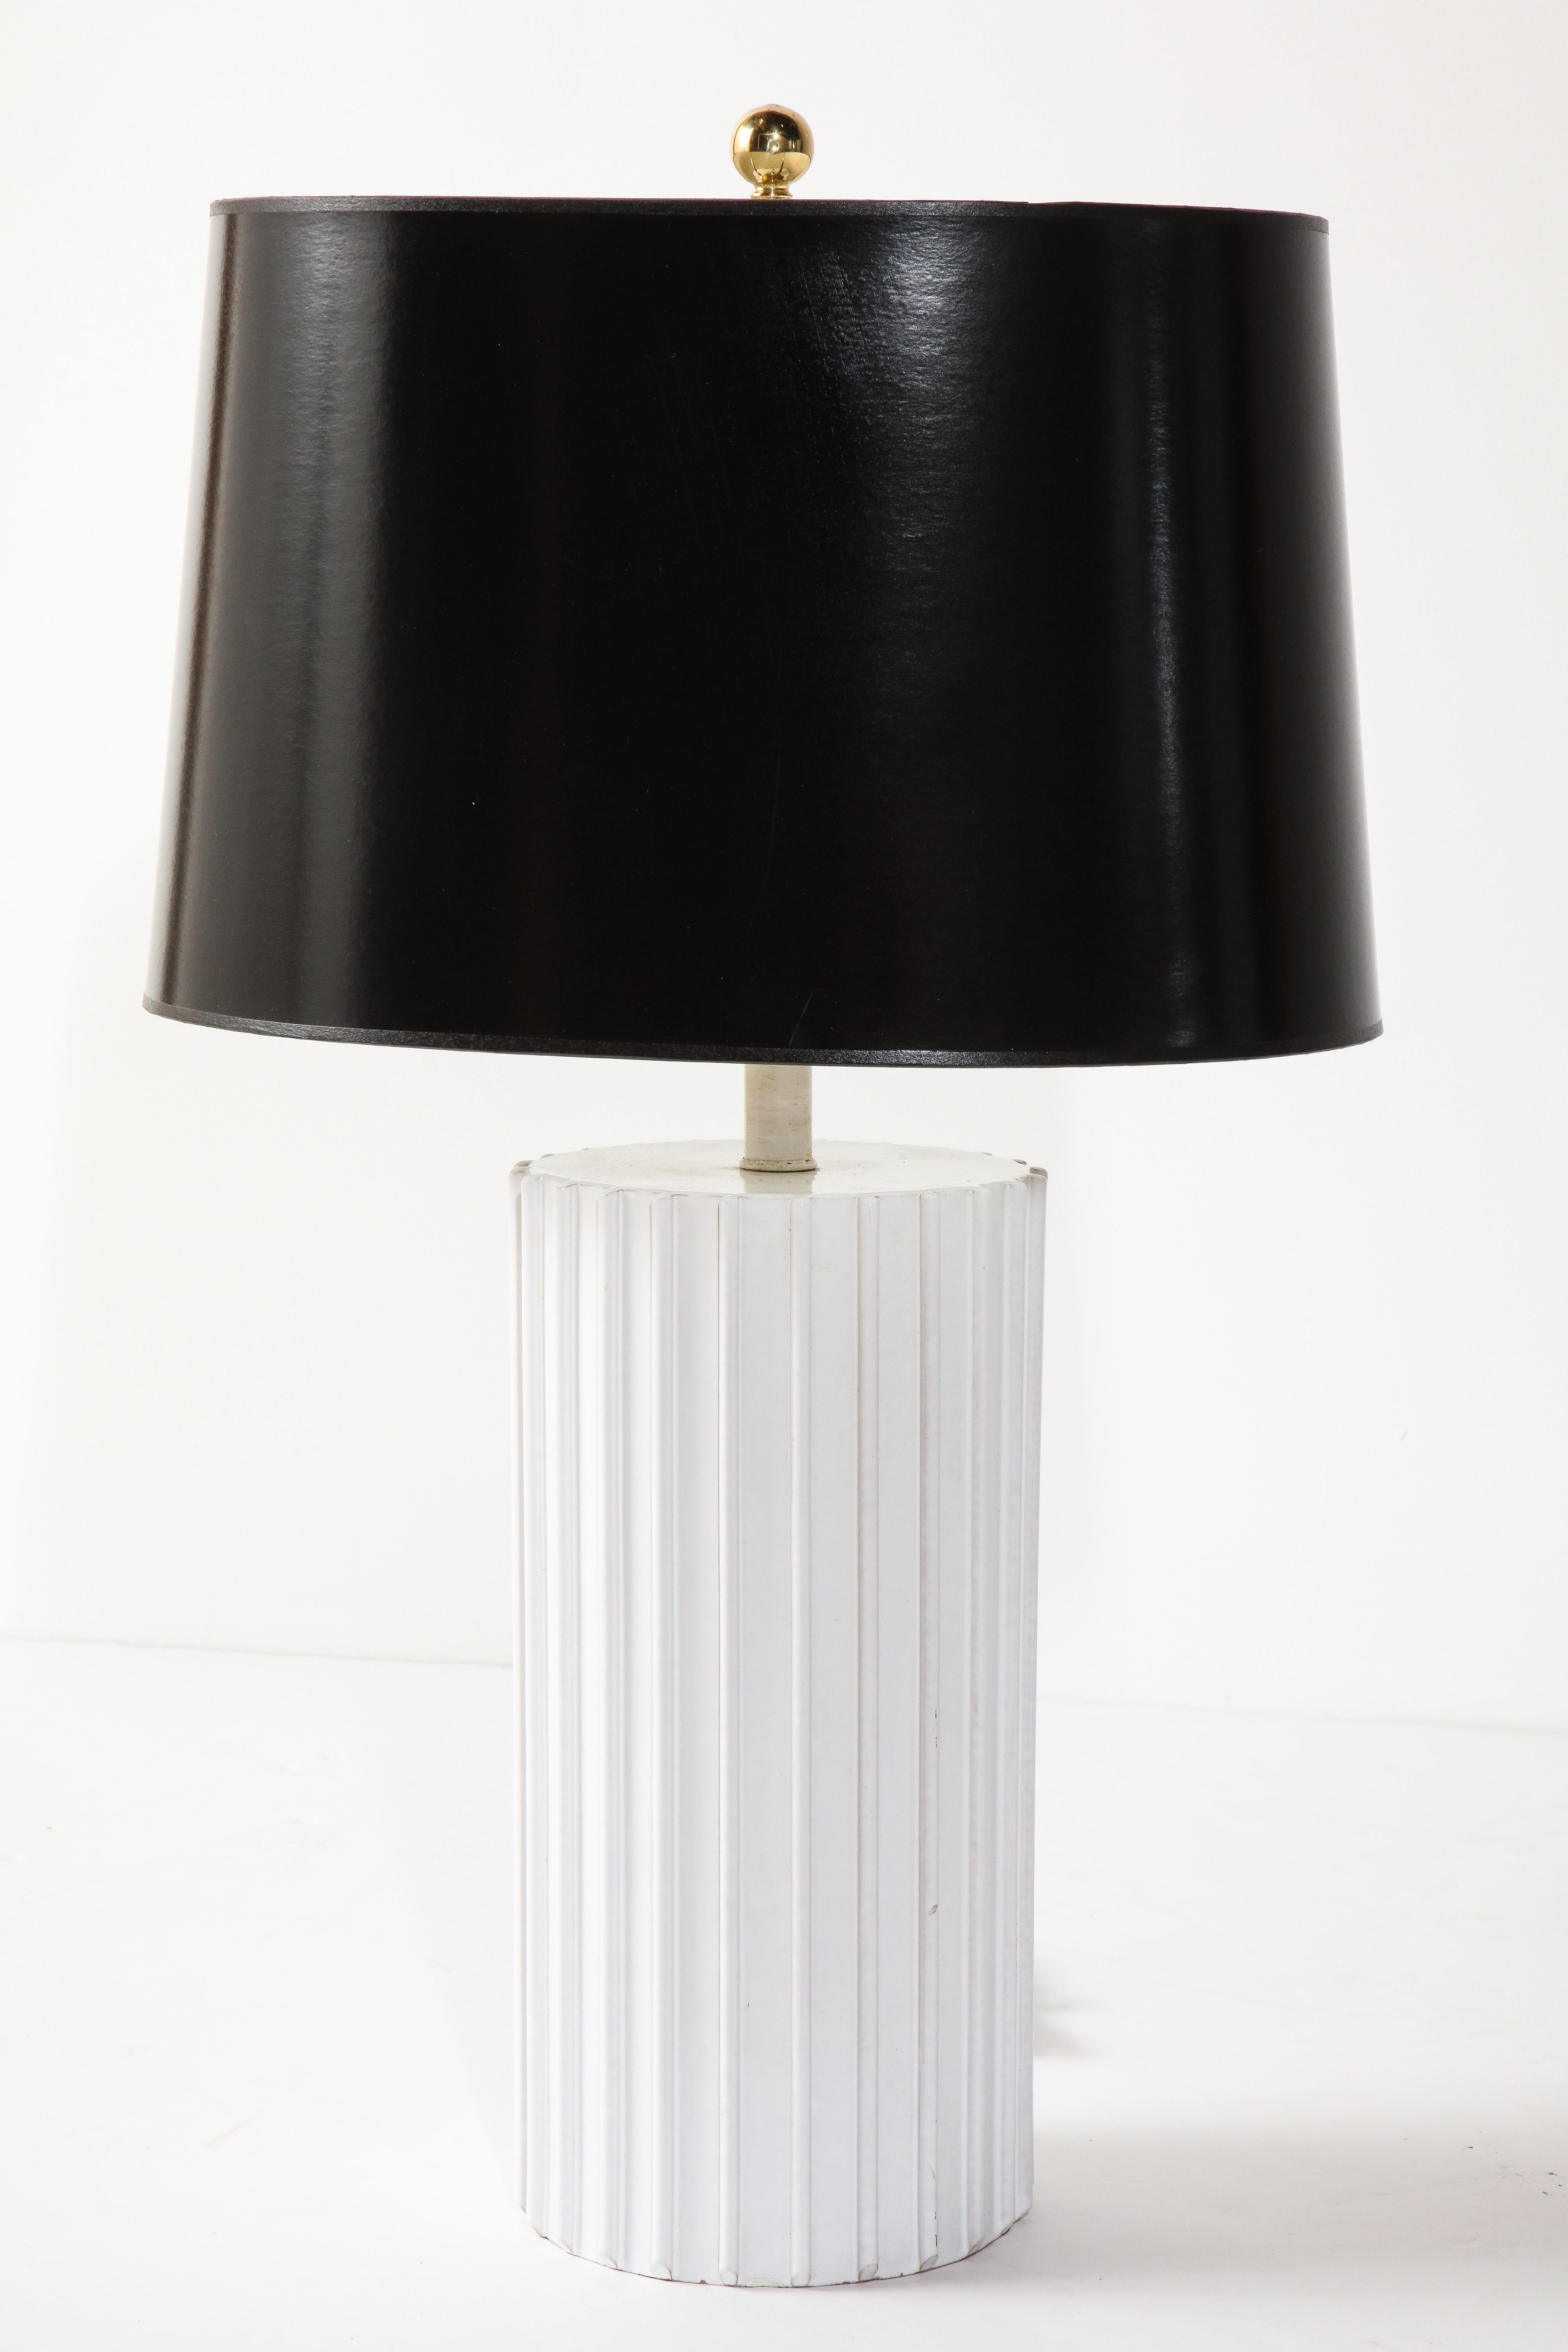 La base de la lampe décorative en céramique blanche mesure 15,5